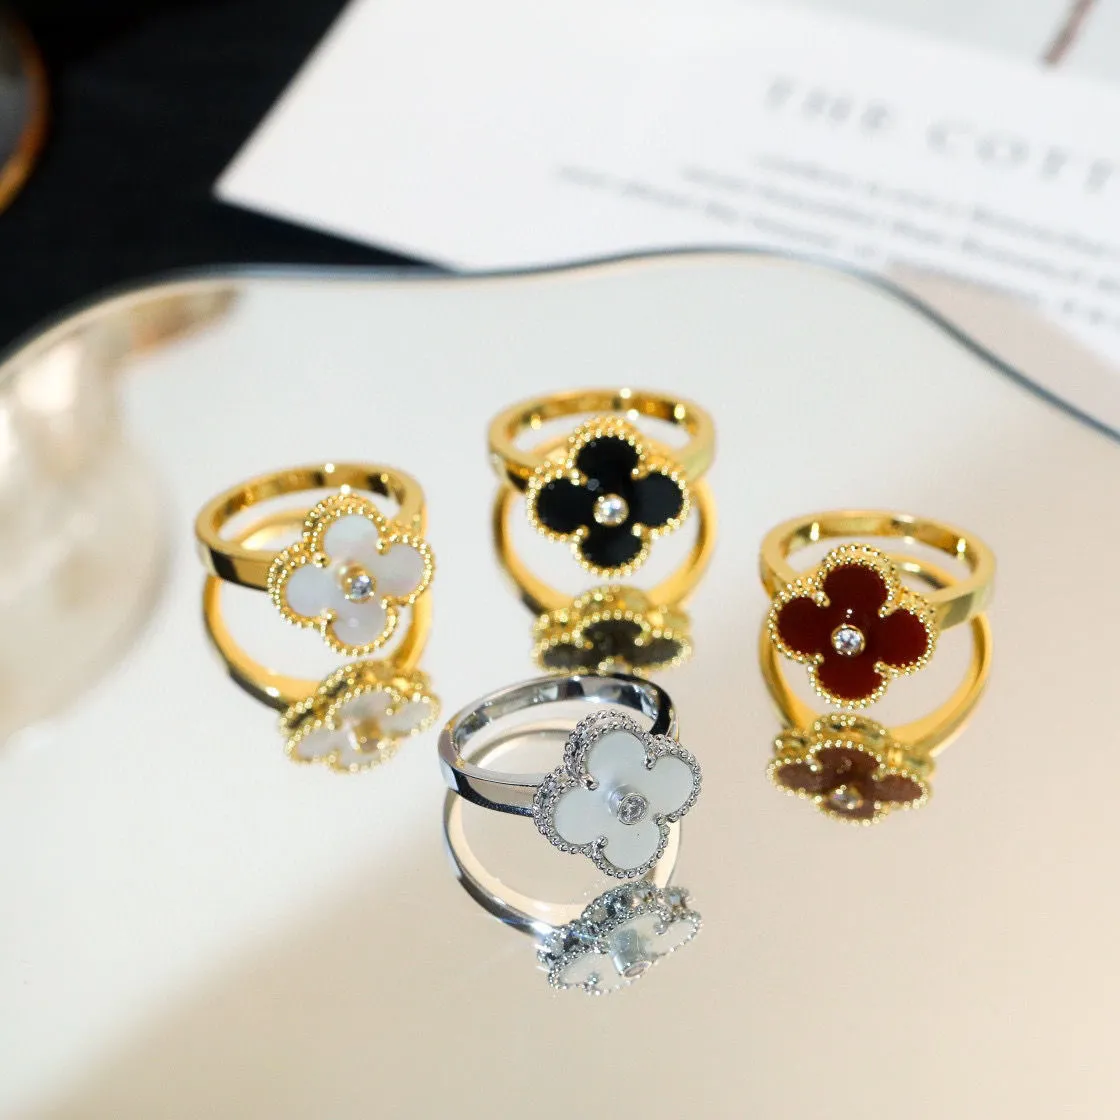 klavertje vier cleef ring caleidoscoop designer ringen voor vrouwen 18K goud zilver diamanten nagelring luxe ringen Valentijnsfeest designer sieraden met doos